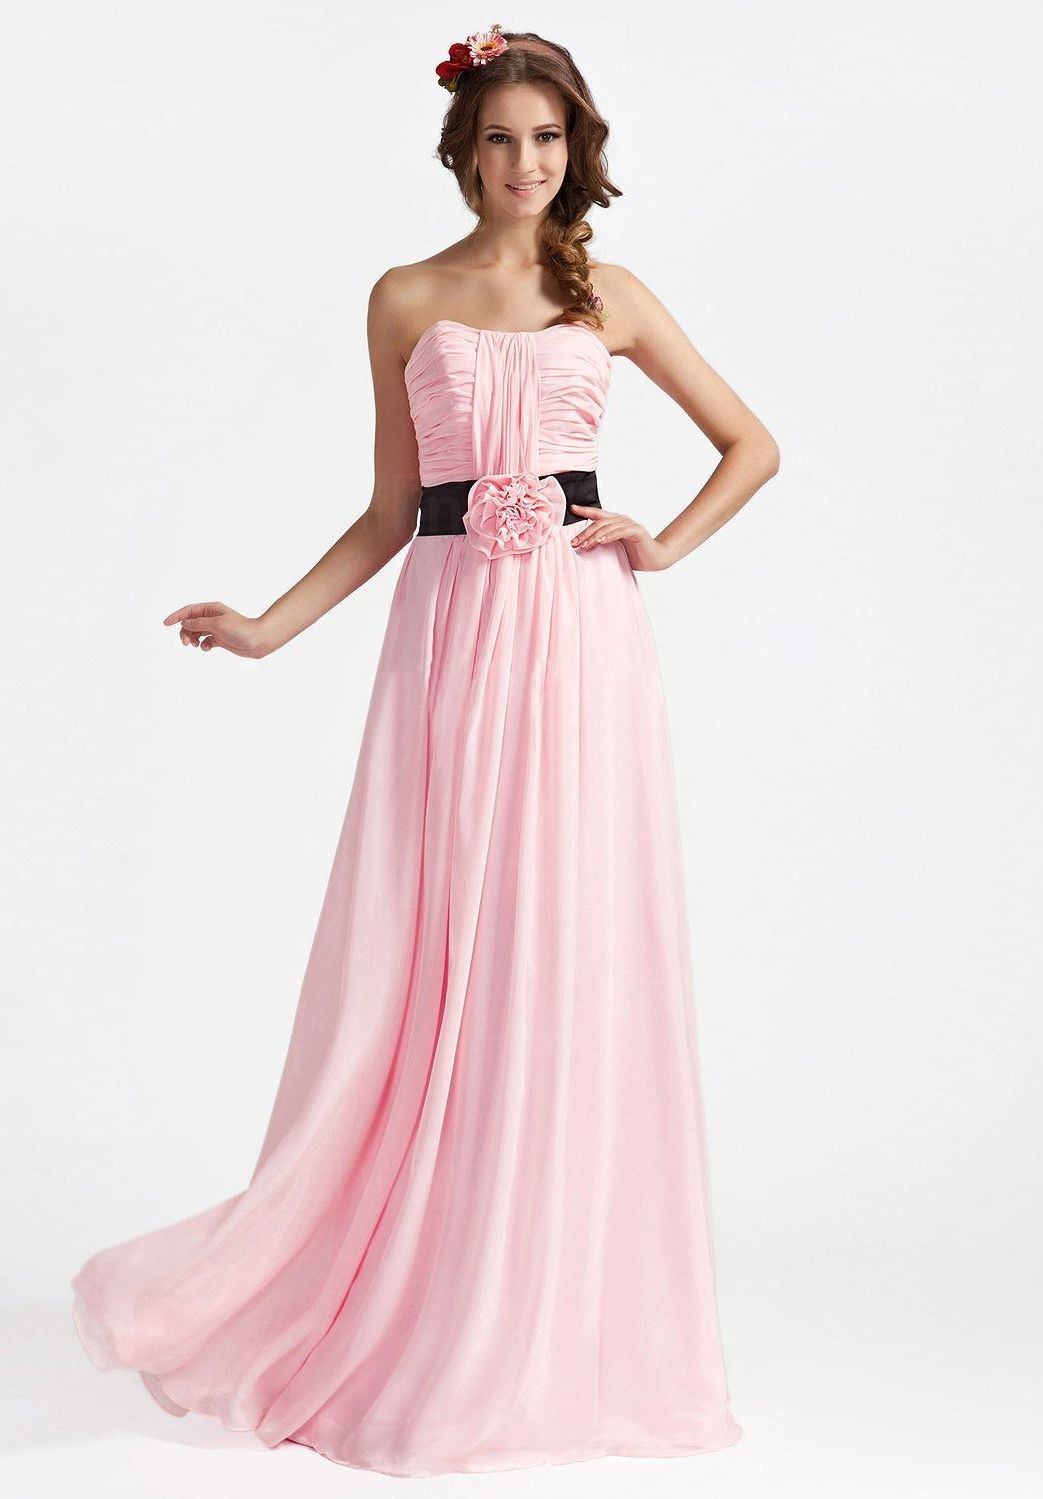 Pink bridesmaid dresses long